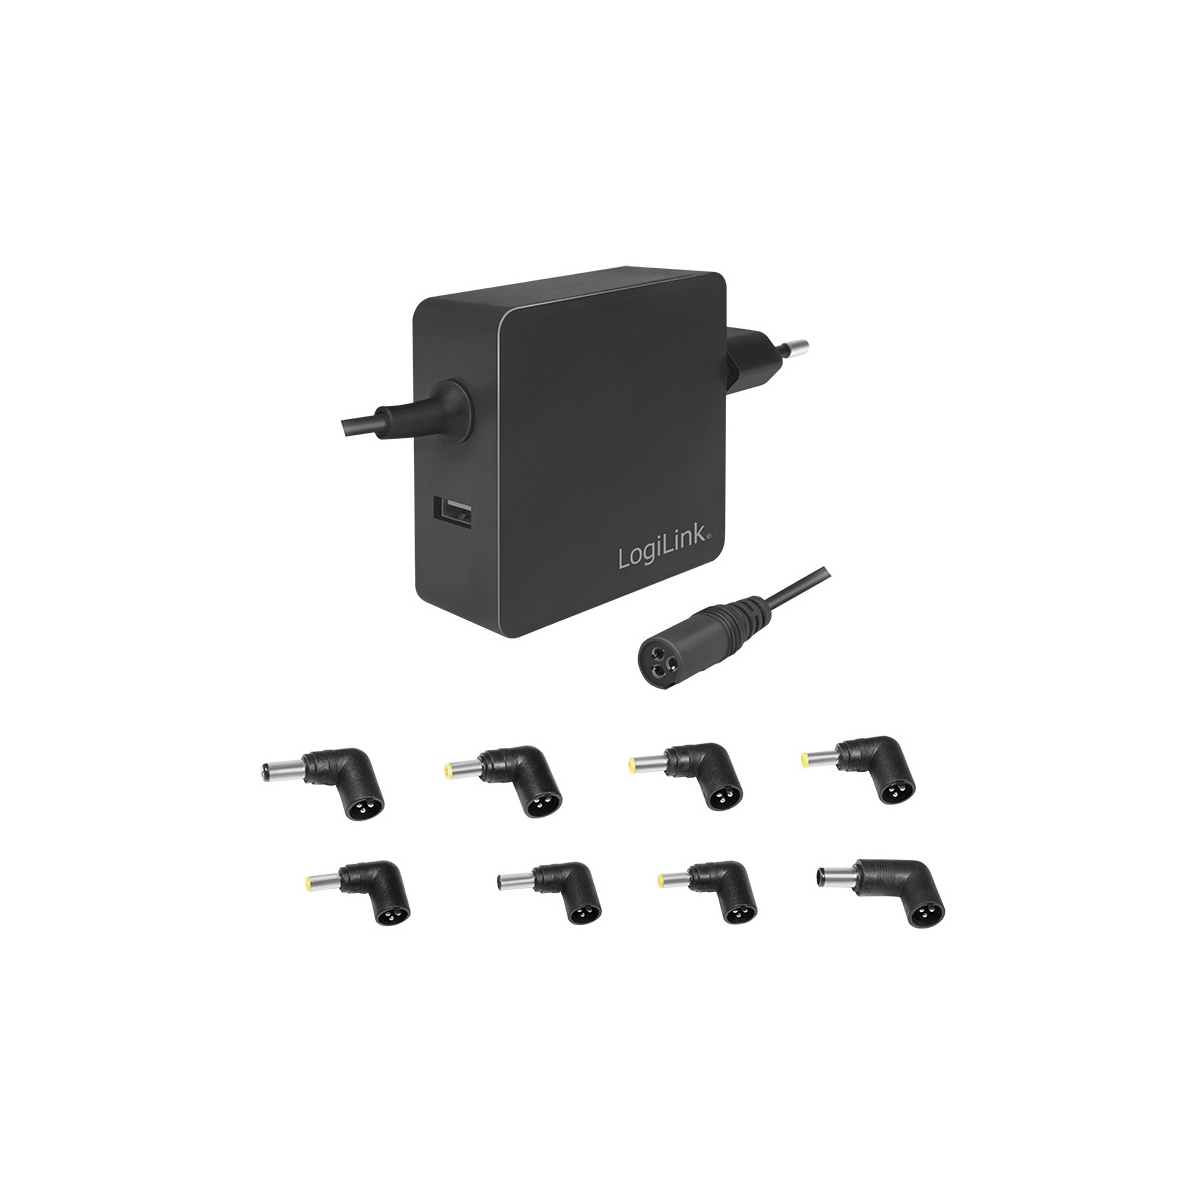 LOGILINK PROFESSIONAL 70 für Watt, Universal, Netzteil USB-Port Notebook, Universal schwarz Stecker-Netzteile, Notebooks